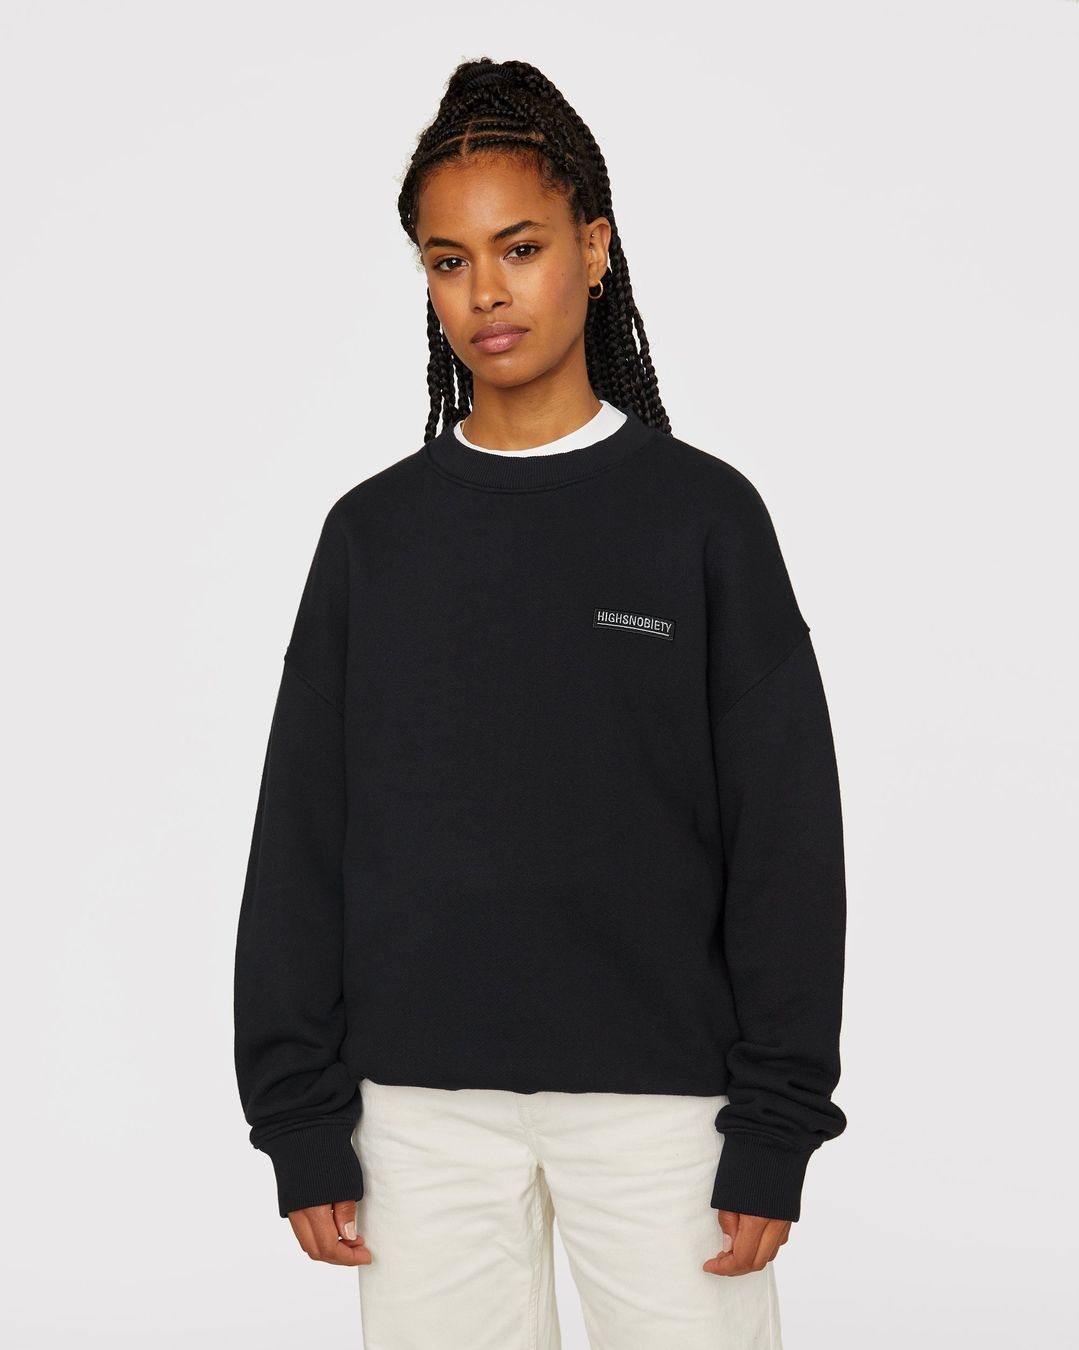 Highsnobiety – Staples Sweatshirt Black | Highsnobiety Shop